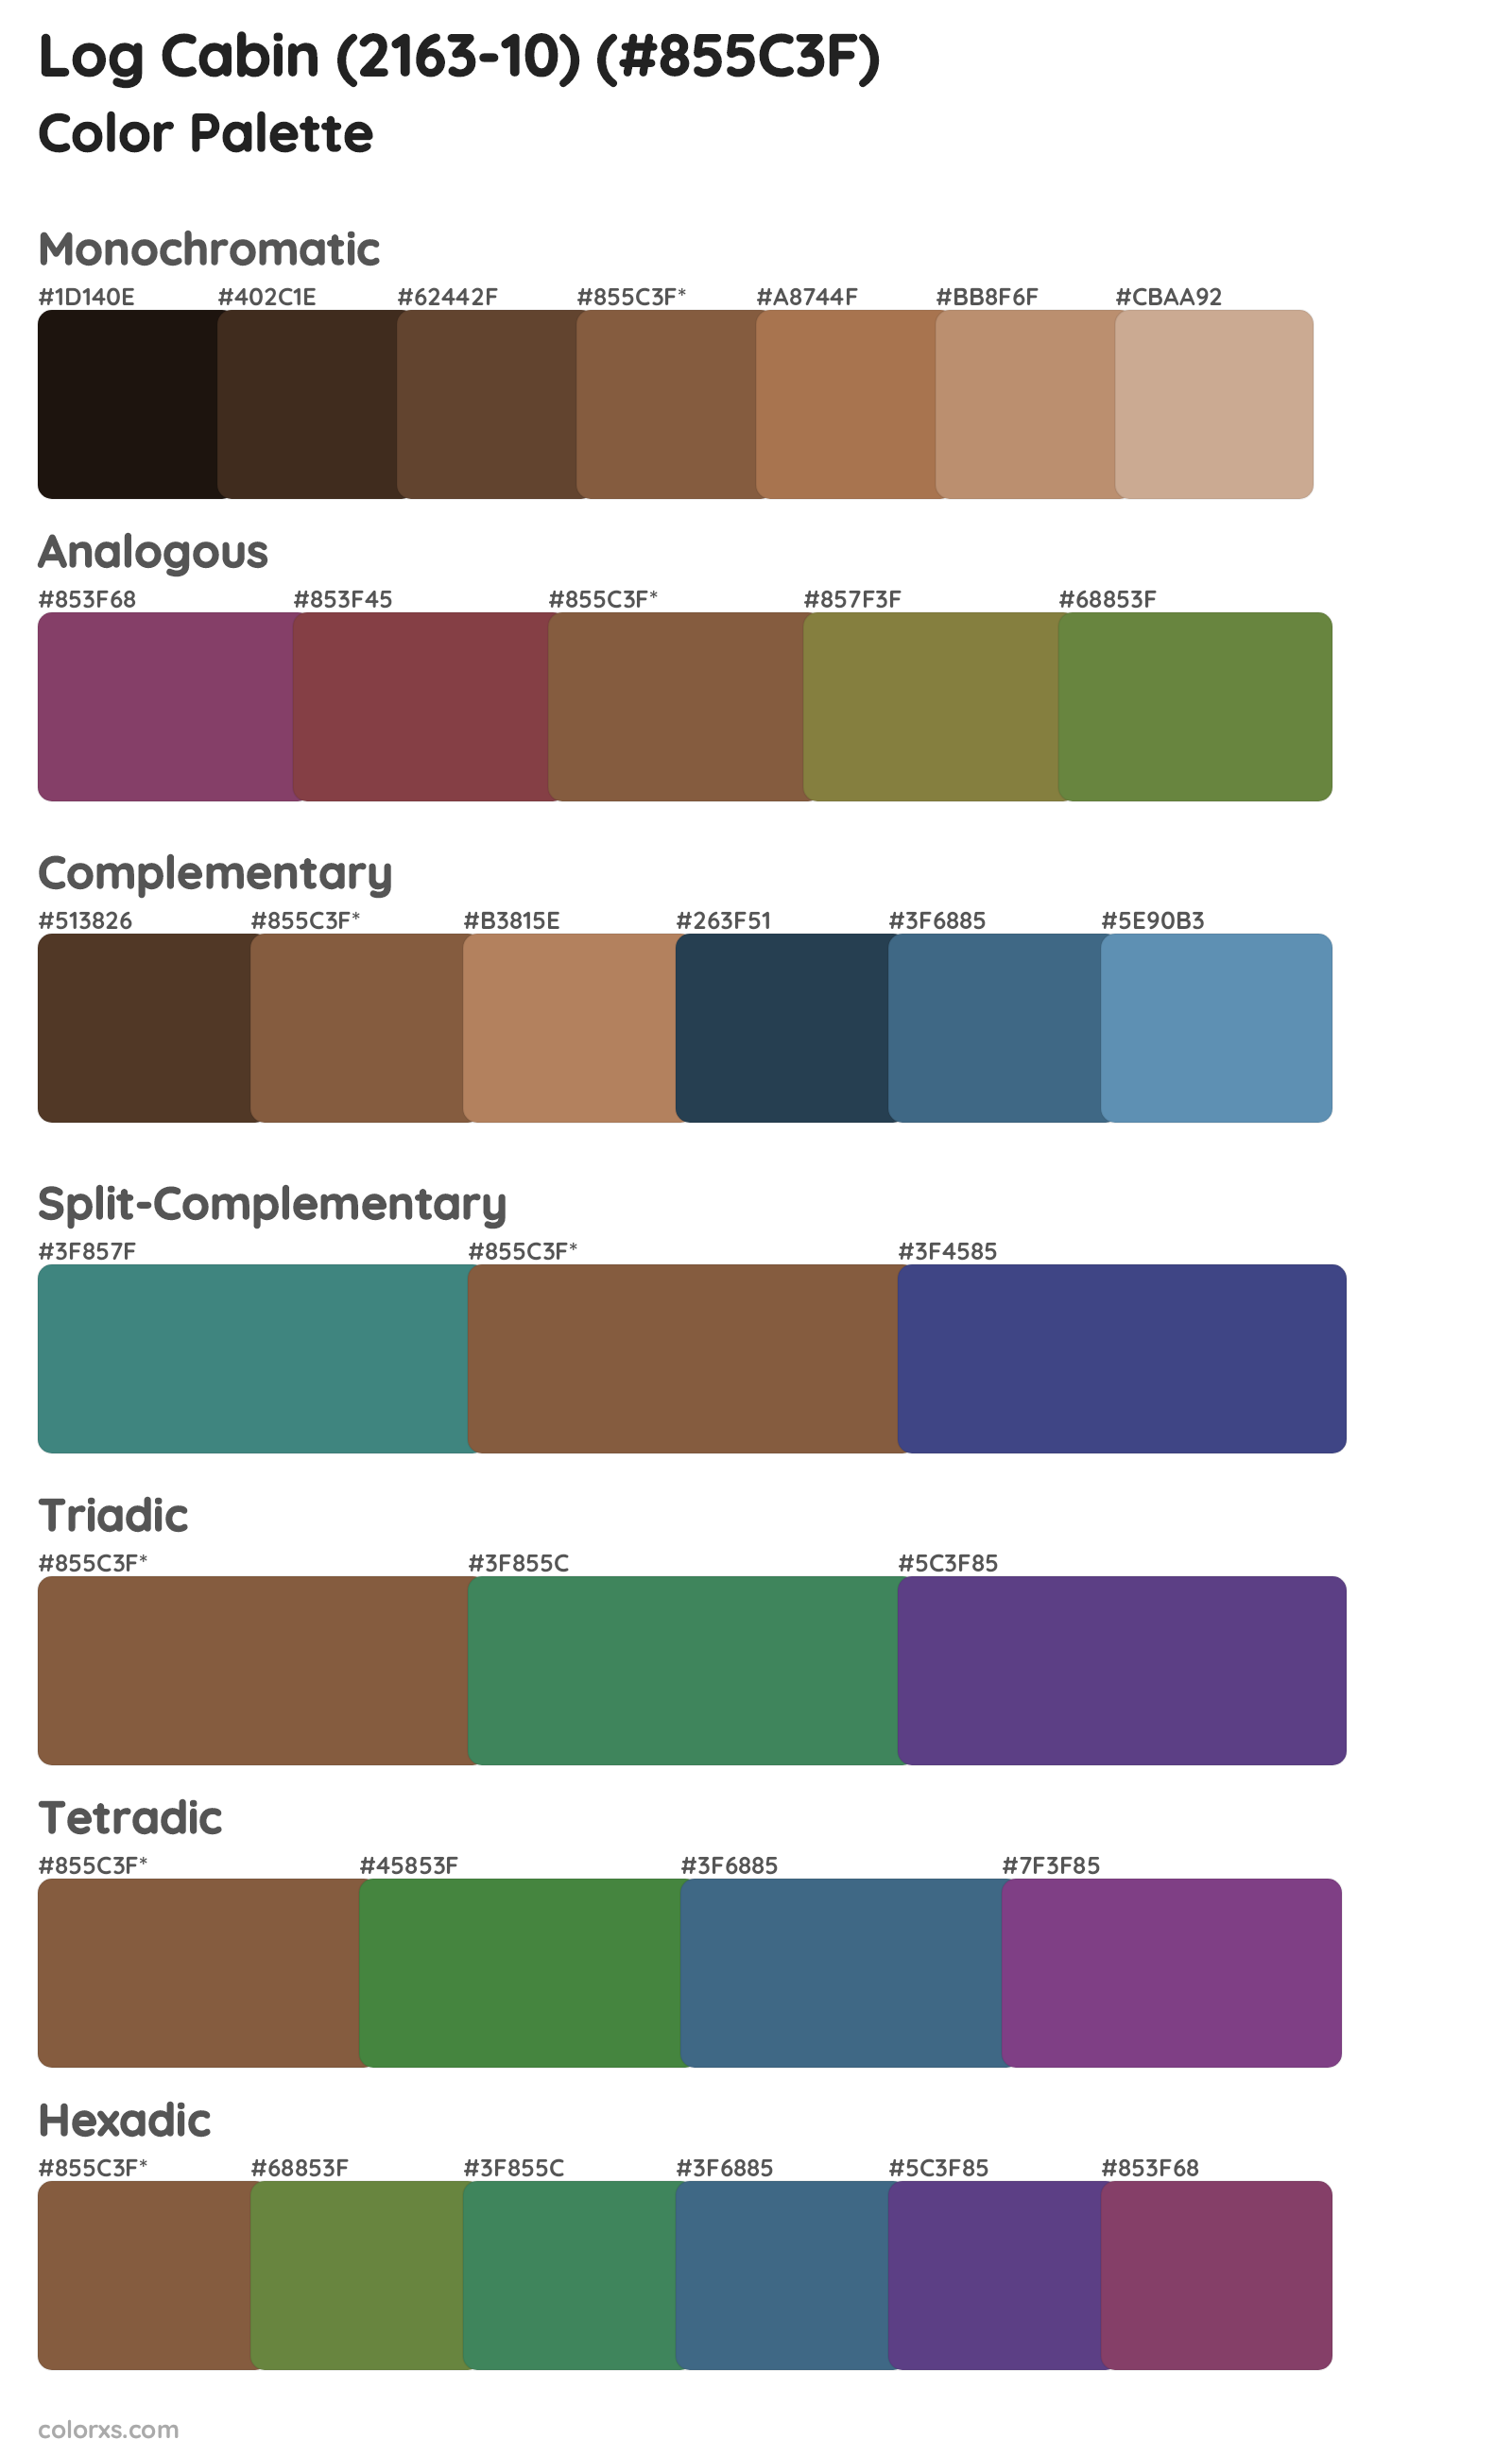 Log Cabin (2163-10) Color Scheme Palettes